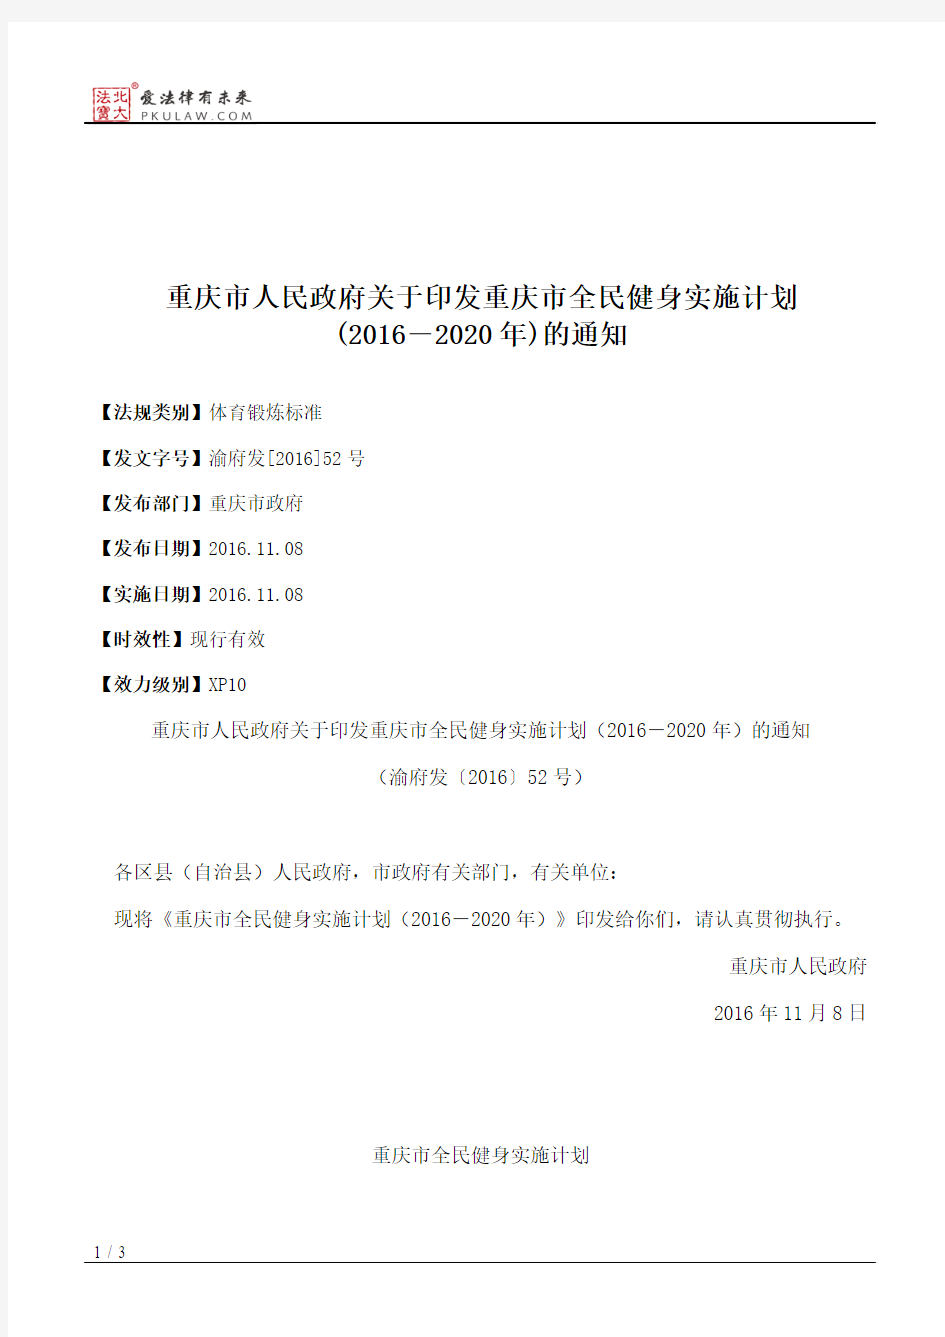 重庆市人民政府关于印发重庆市全民健身实施计划(2016―2020年)的通知